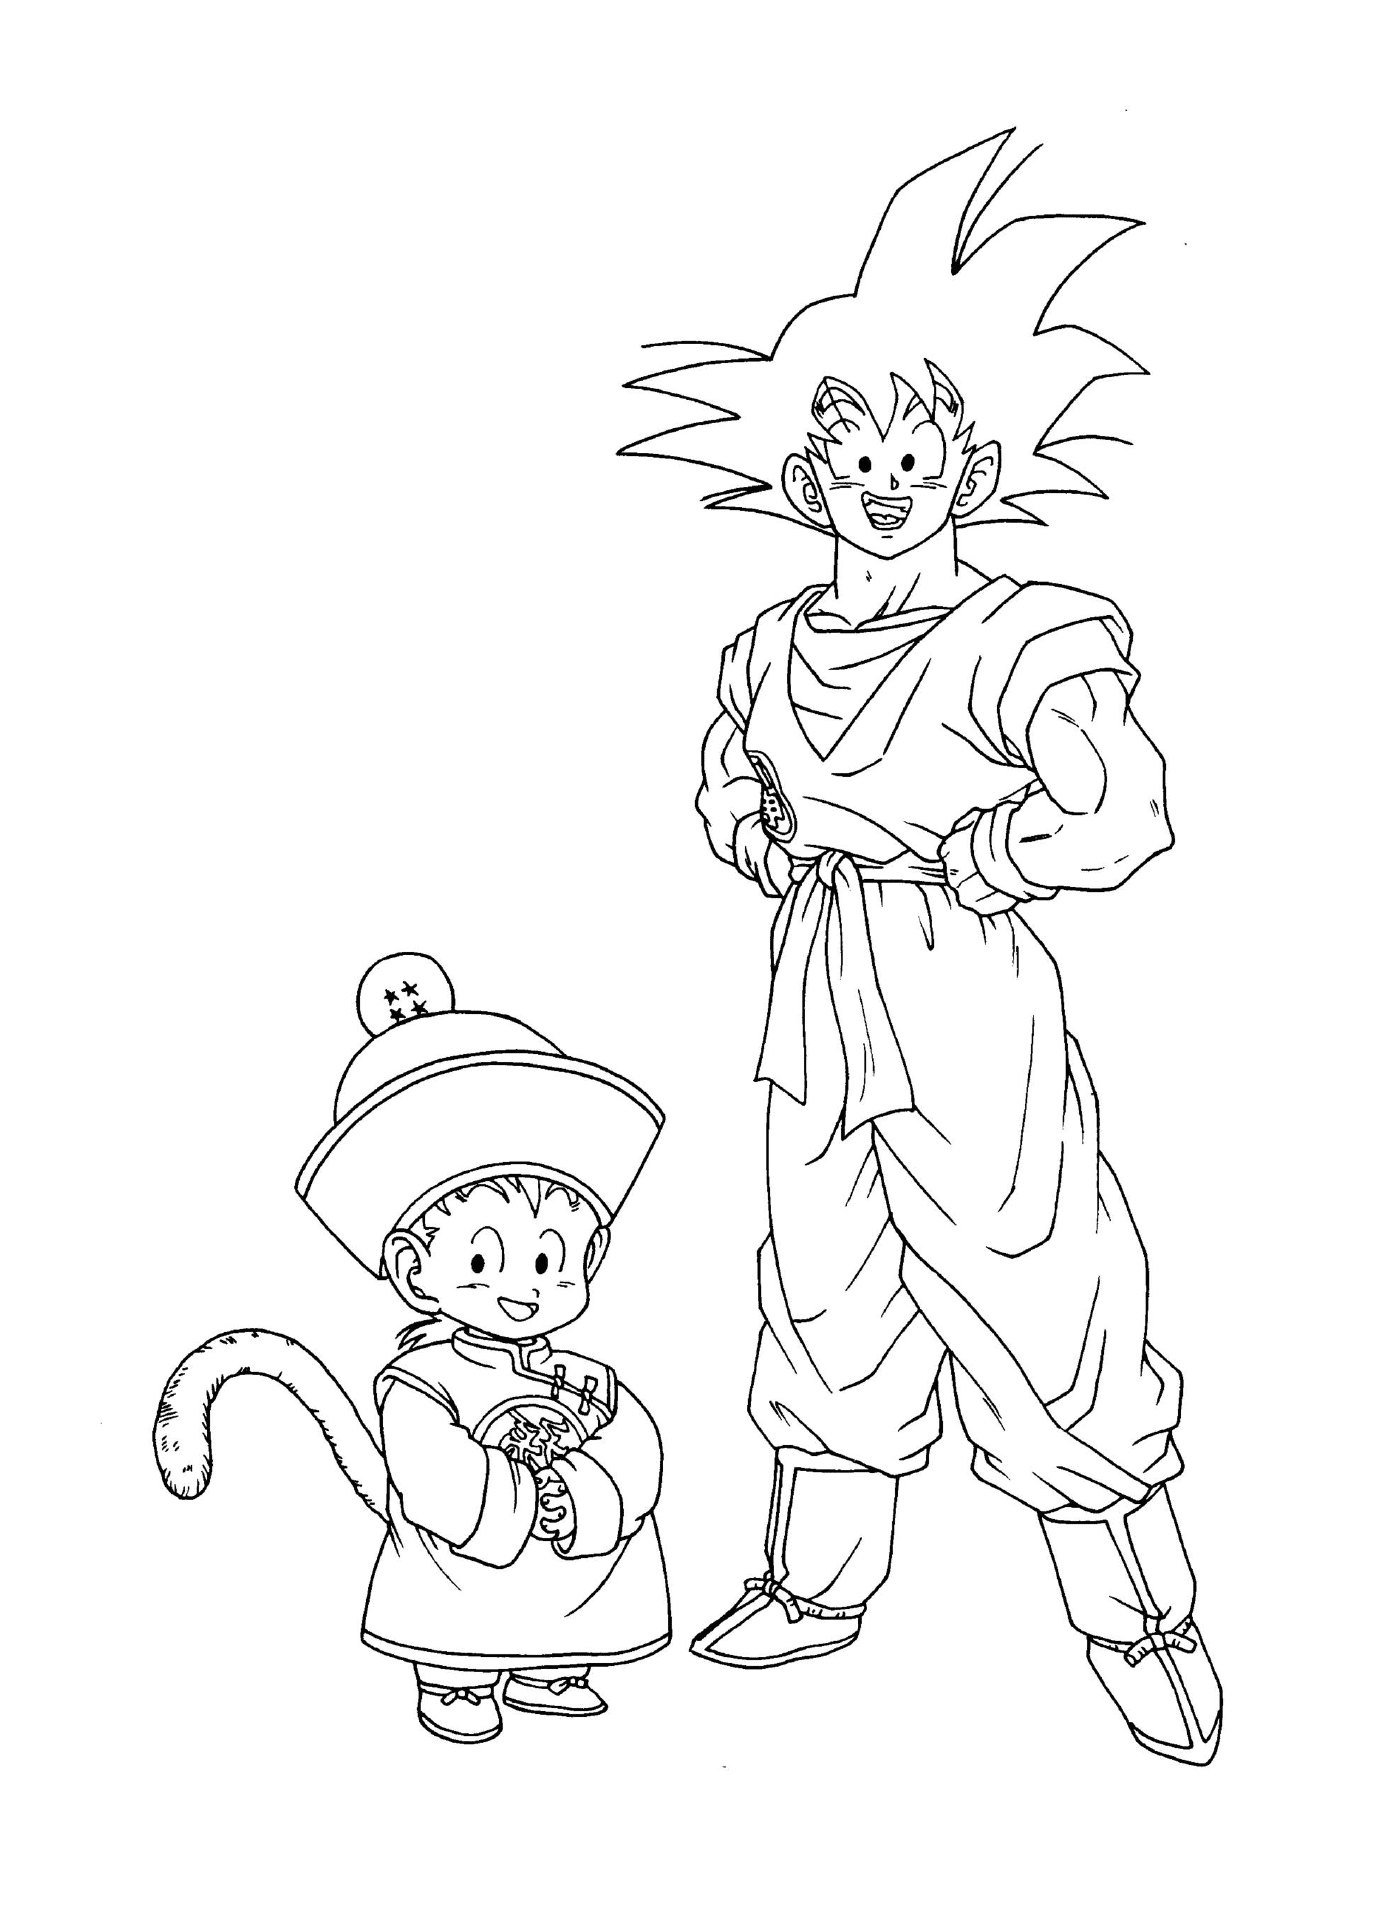  Charaktere des Drachenballs Z: Goku und Goten 